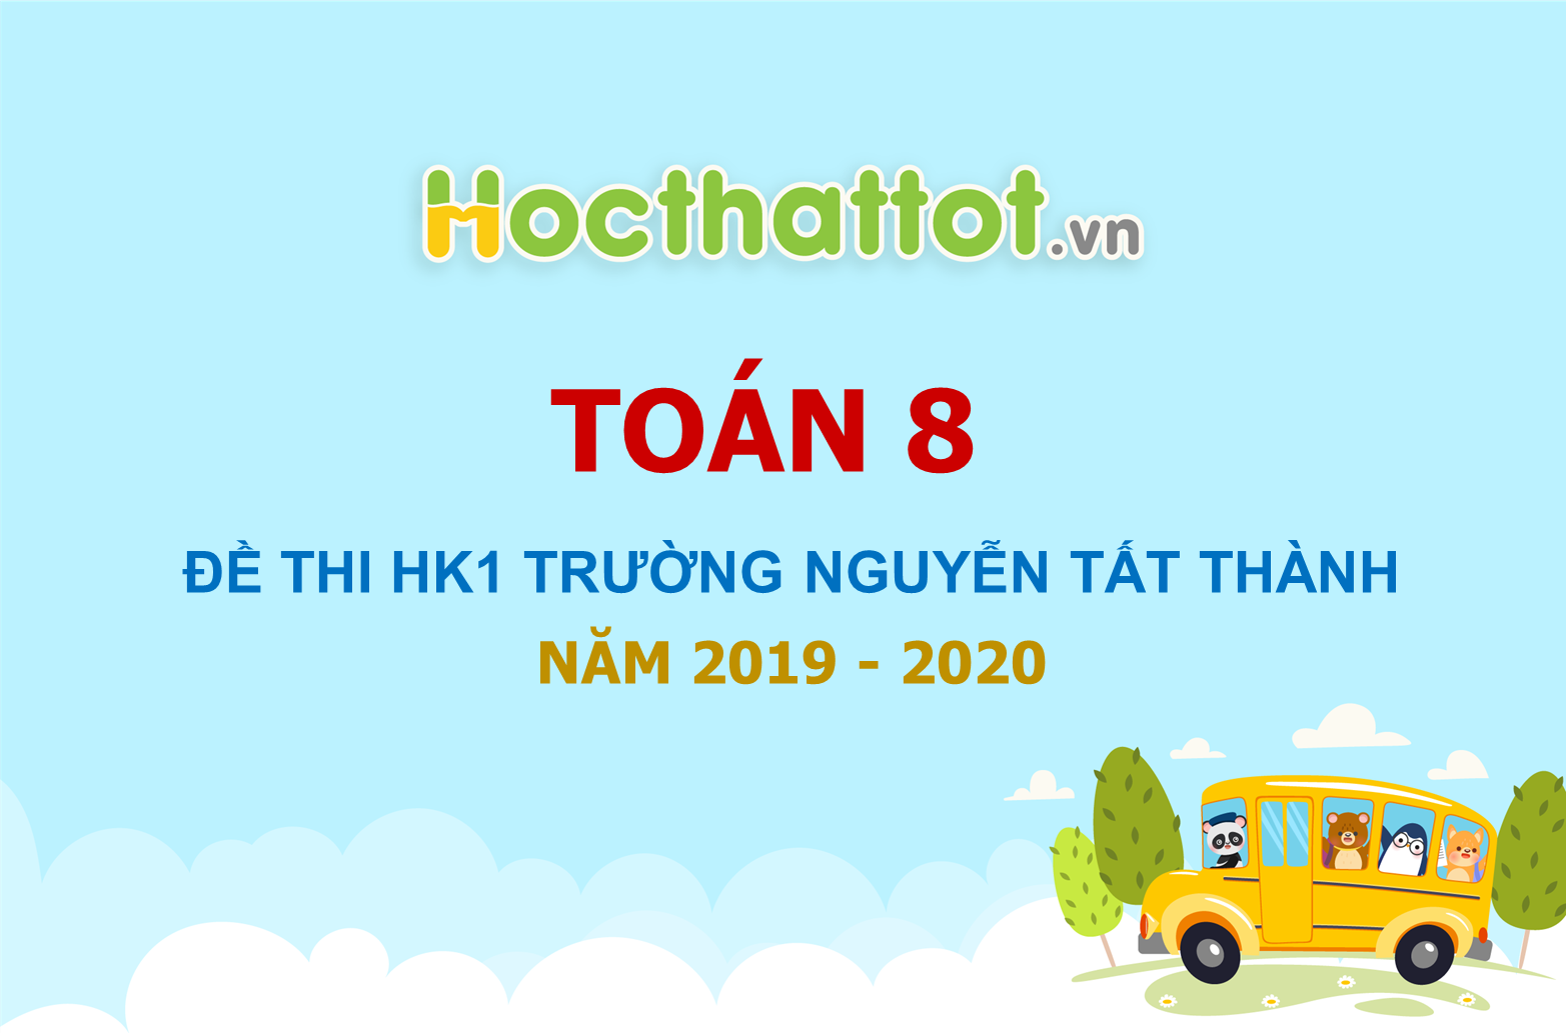 de-thi-hk1-toan-8-nam-2019-2020-truong-nguyen-tat-thanh-ha-noi